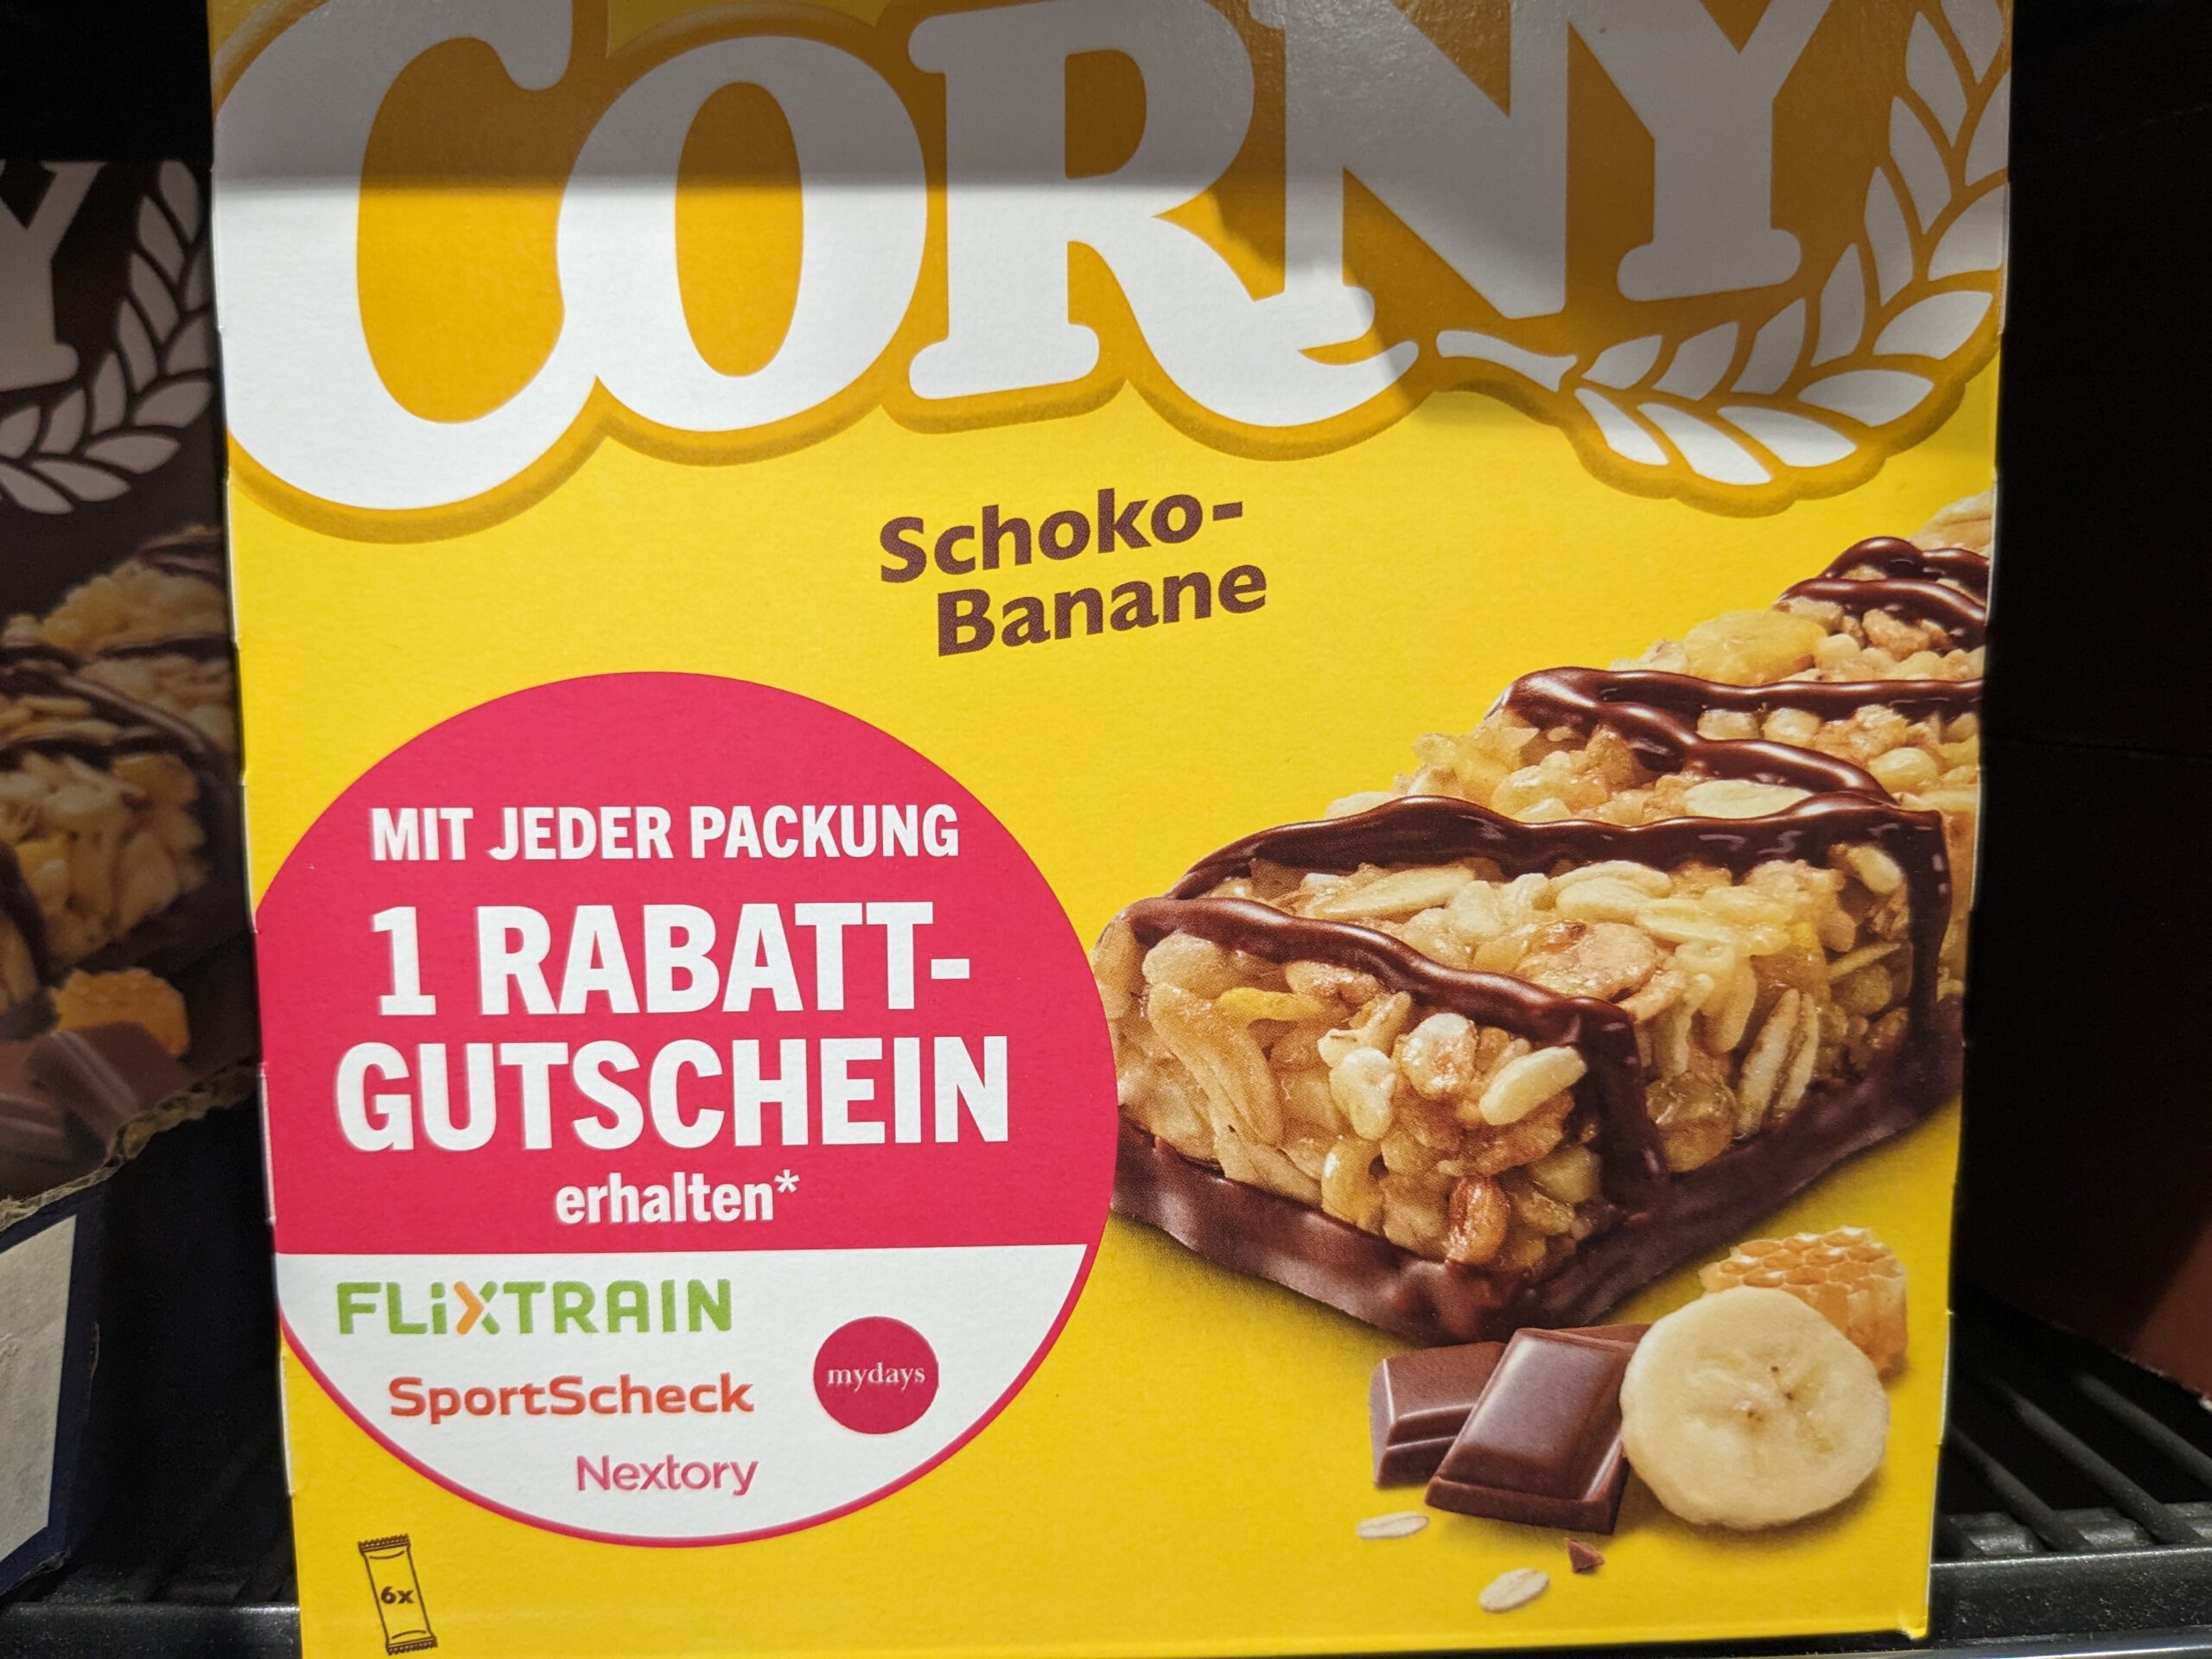 Corny: Rabatt-Gutschein für Flixtrain, mydays, Sportscheck geschenkt